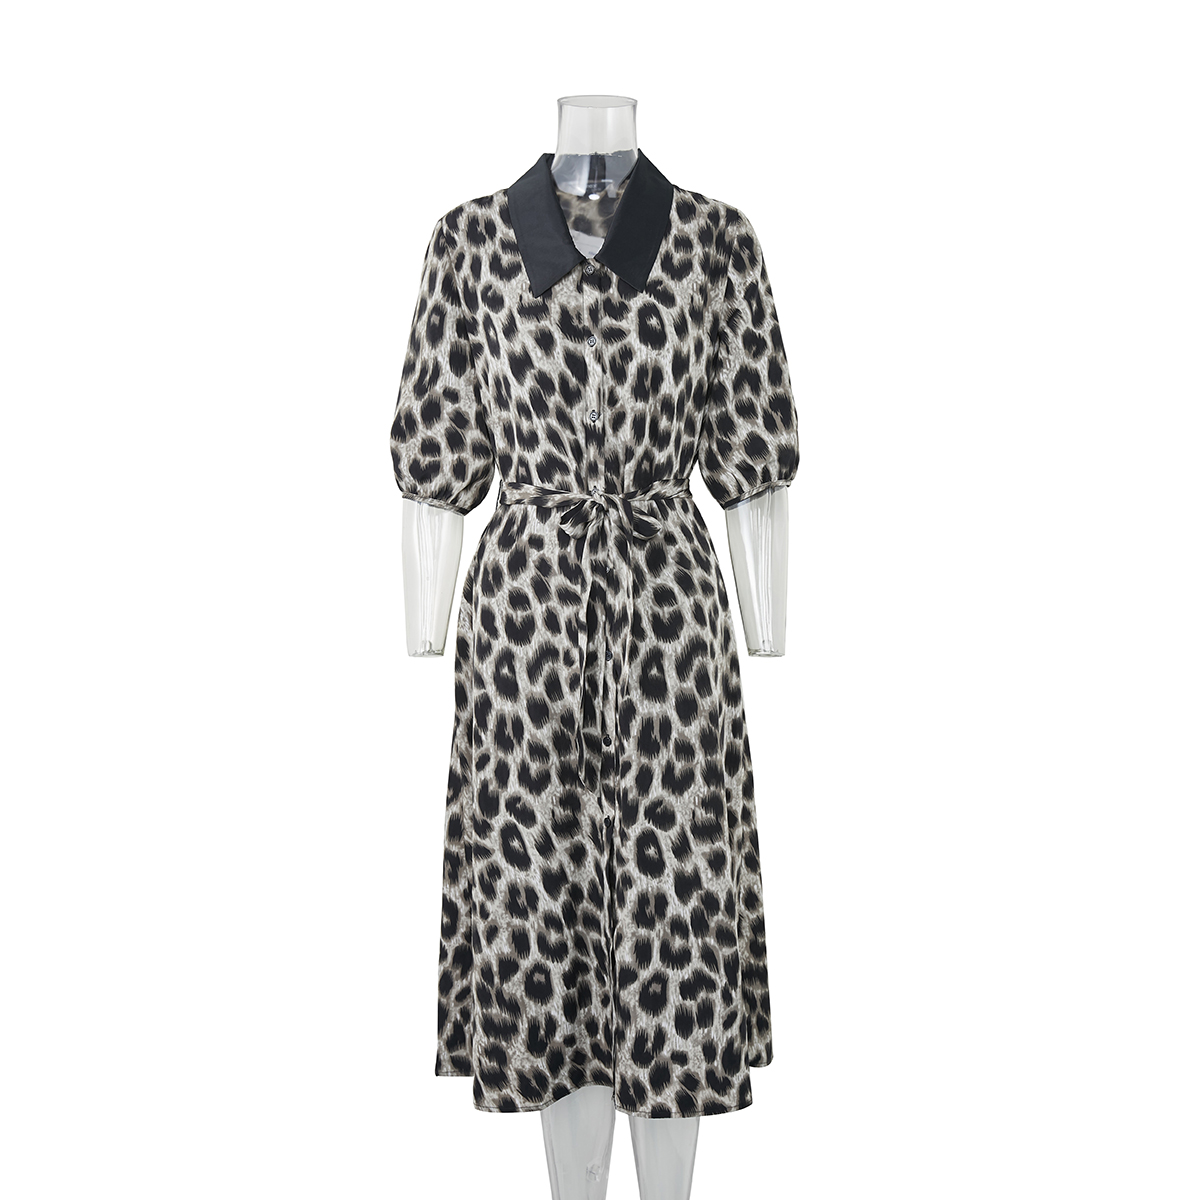 Καλοκαιρινά φορέματα Μακρυμάνικα Animal Print Button Πόλο μπλουζάκι γιακά Casual κομψό κοντομάνικο Επιλεγμένη εικόνα